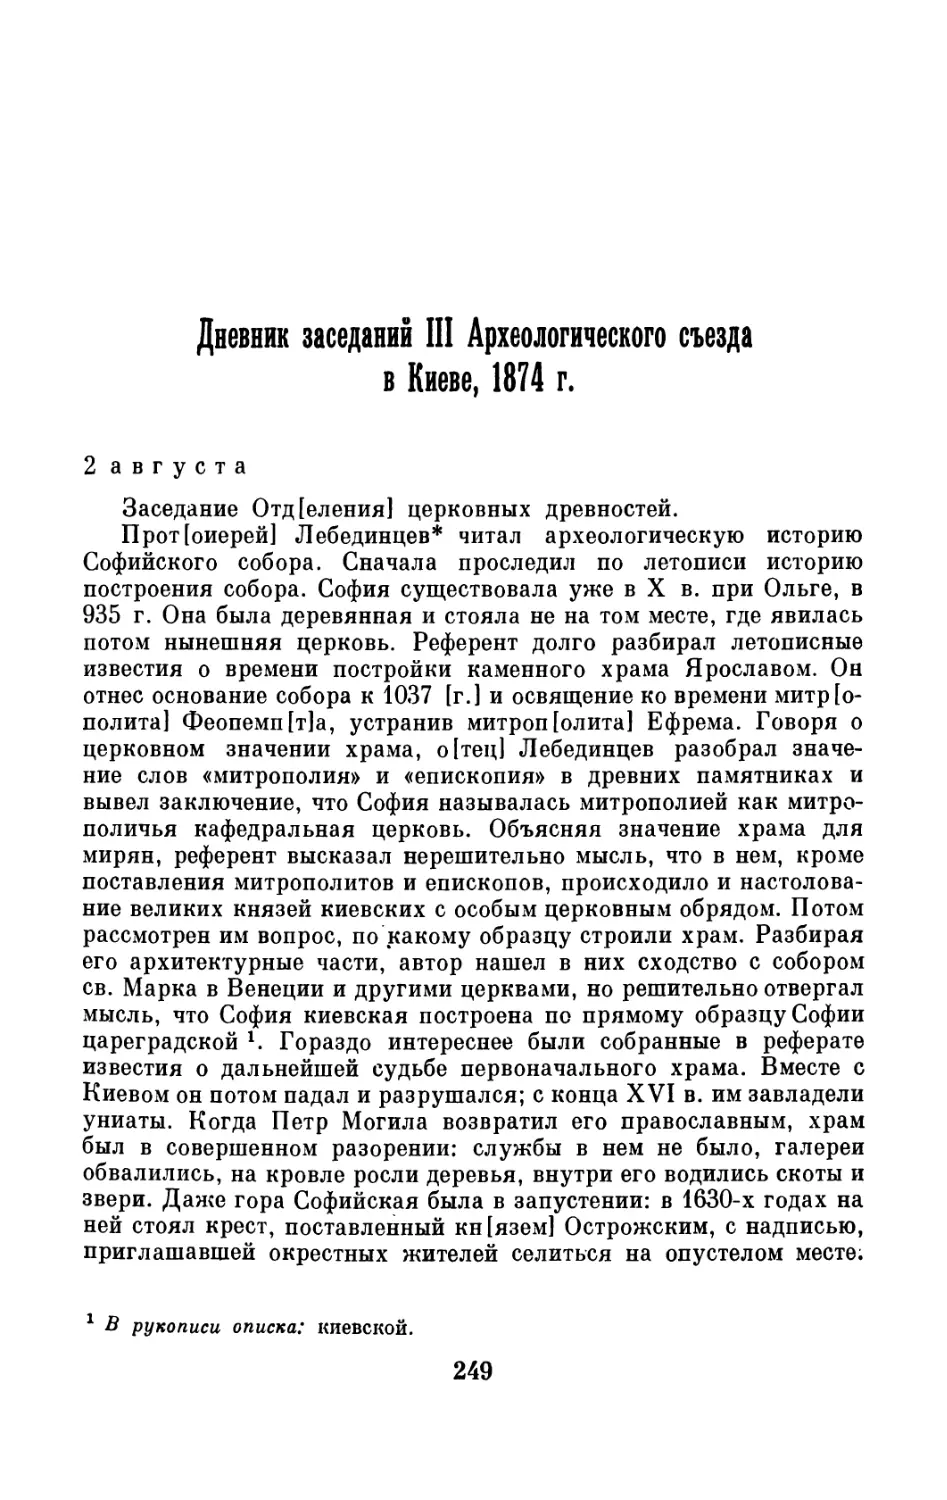 Дневник заседаний III Археологического съезда в Киеве, 1874 г